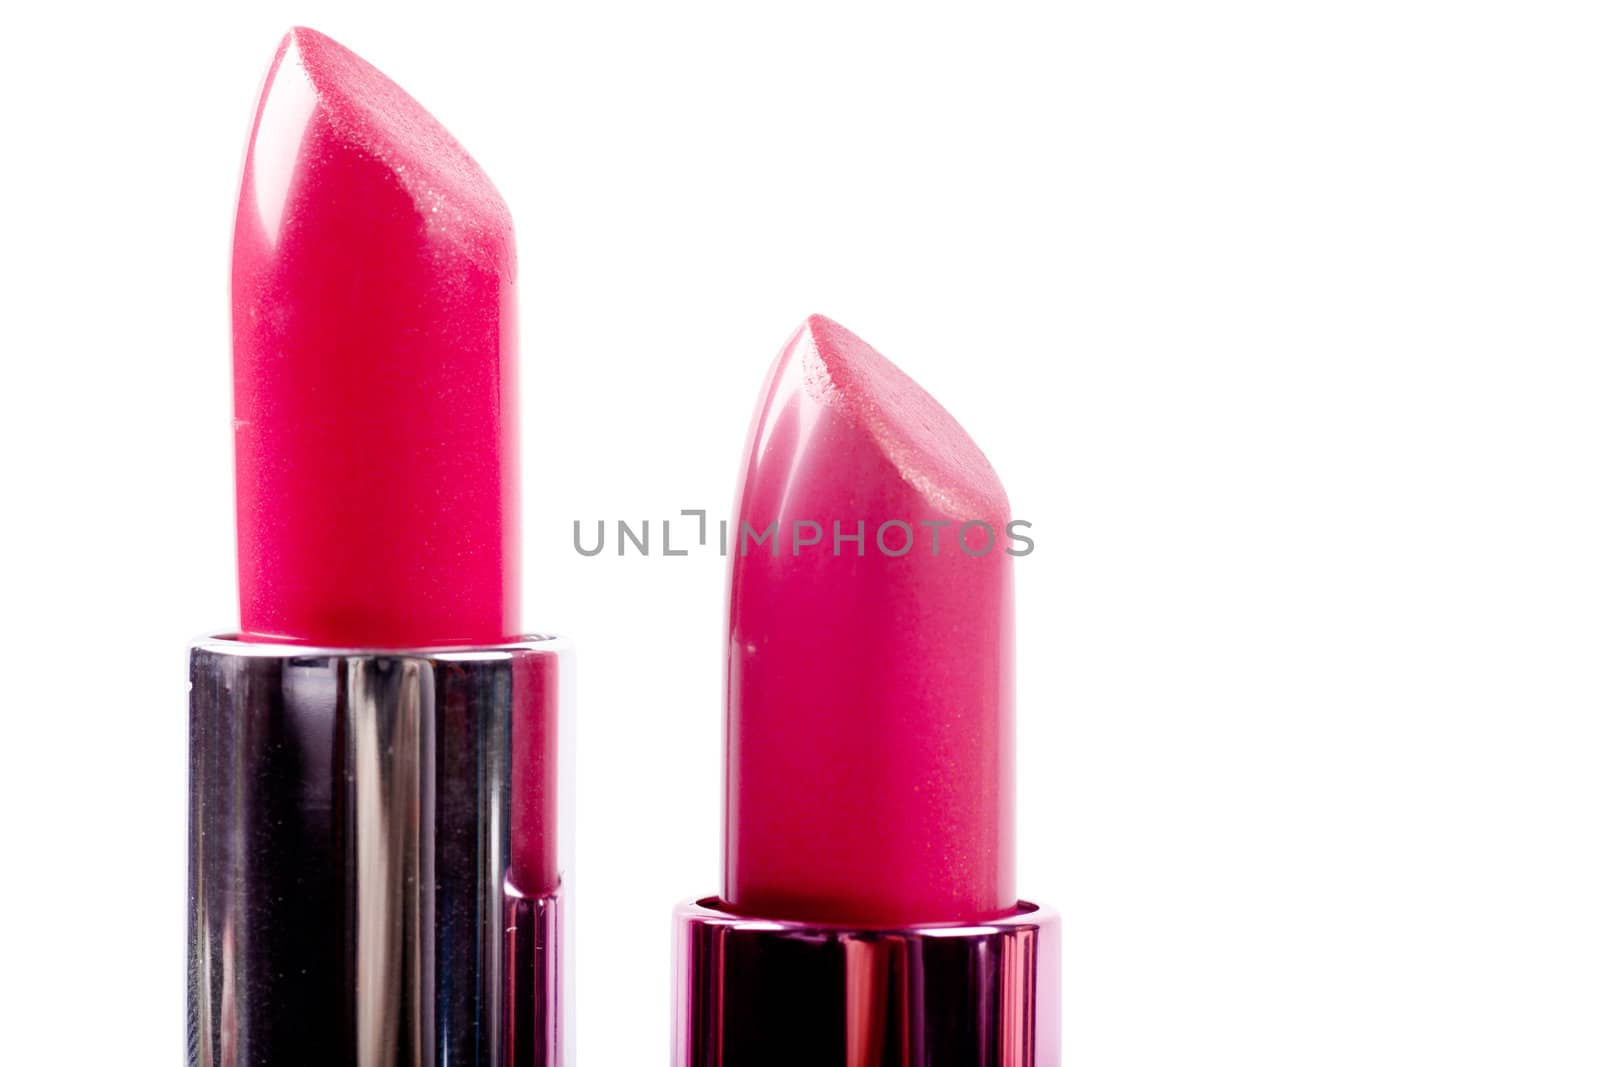 Lipsticks by AGorohov